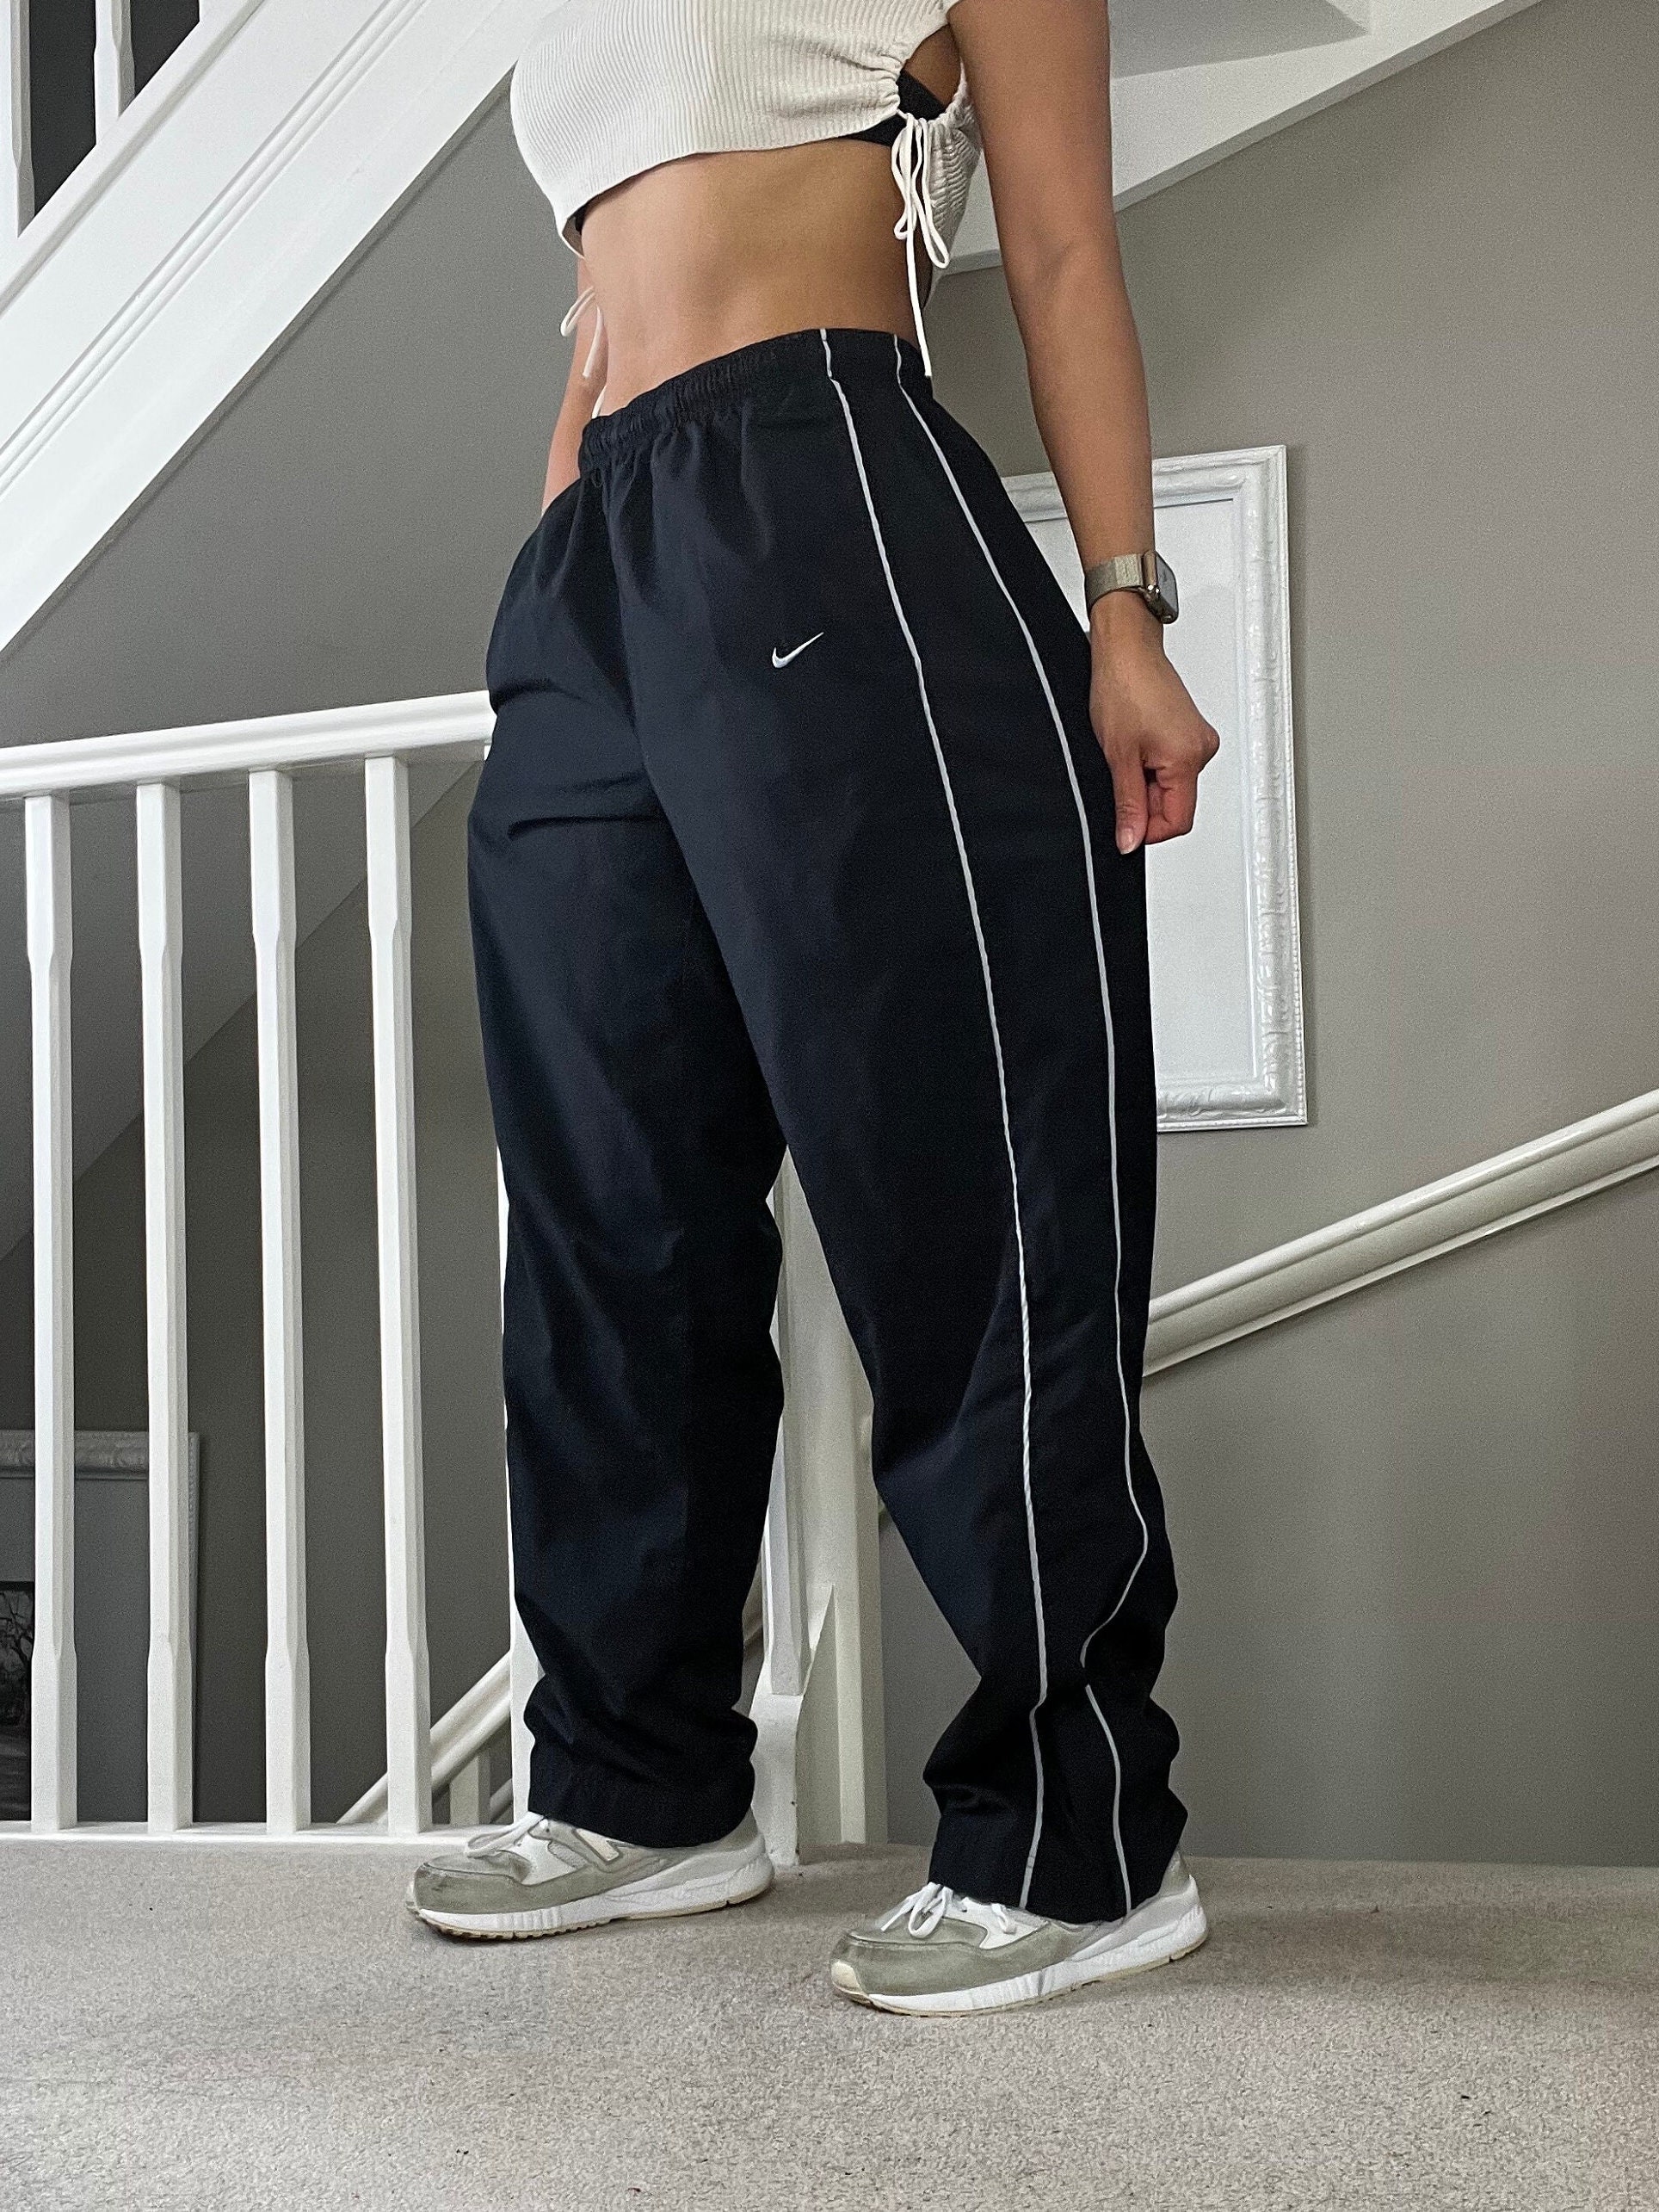 Nike Track Pants Womens Large Black Elastic Waist Ankle Cinch Vintage Y2K